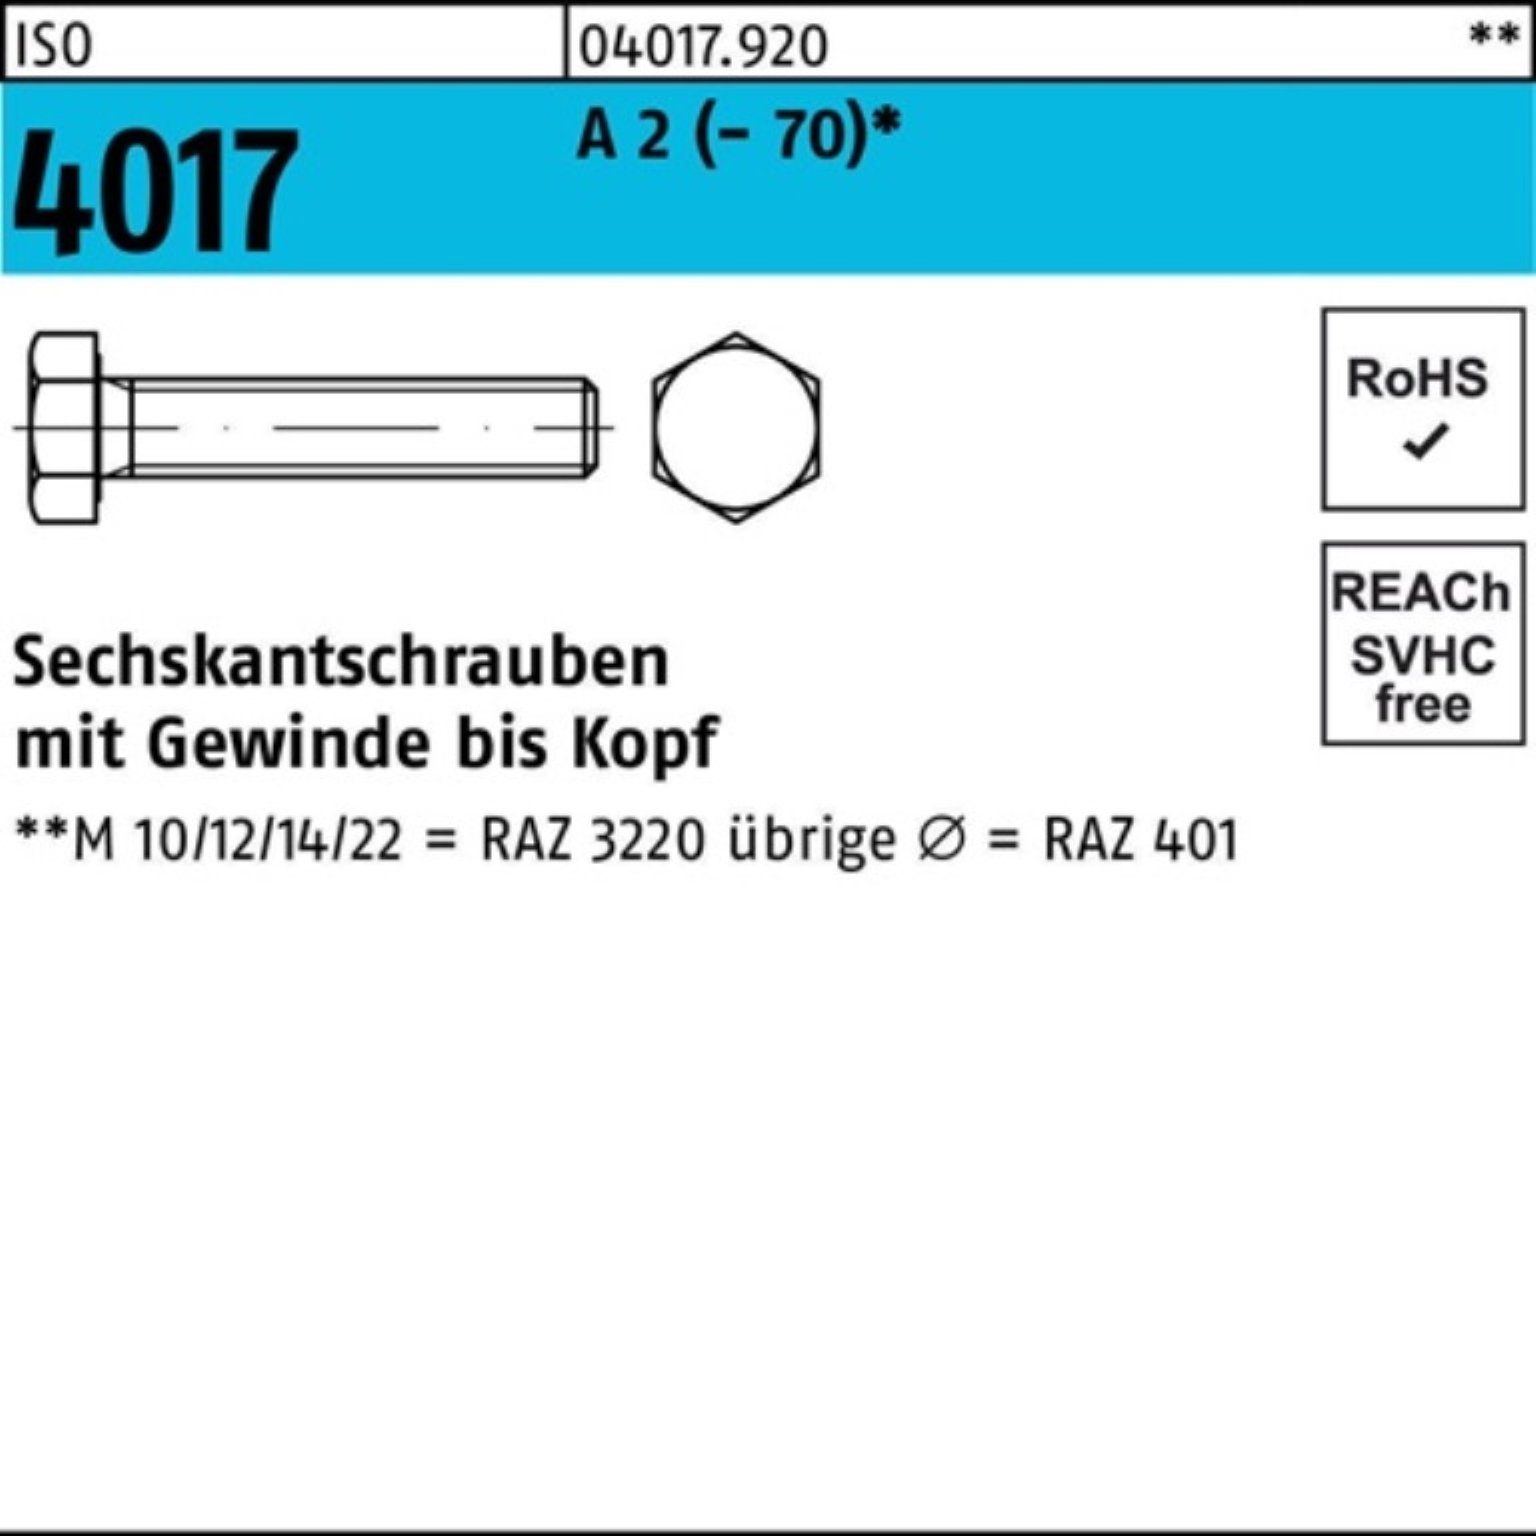 Bufab Sechskantschraube 100er Pack Sechskantschraube ISO 4017 VG M5x 12 A 2 (70) 100 Stück